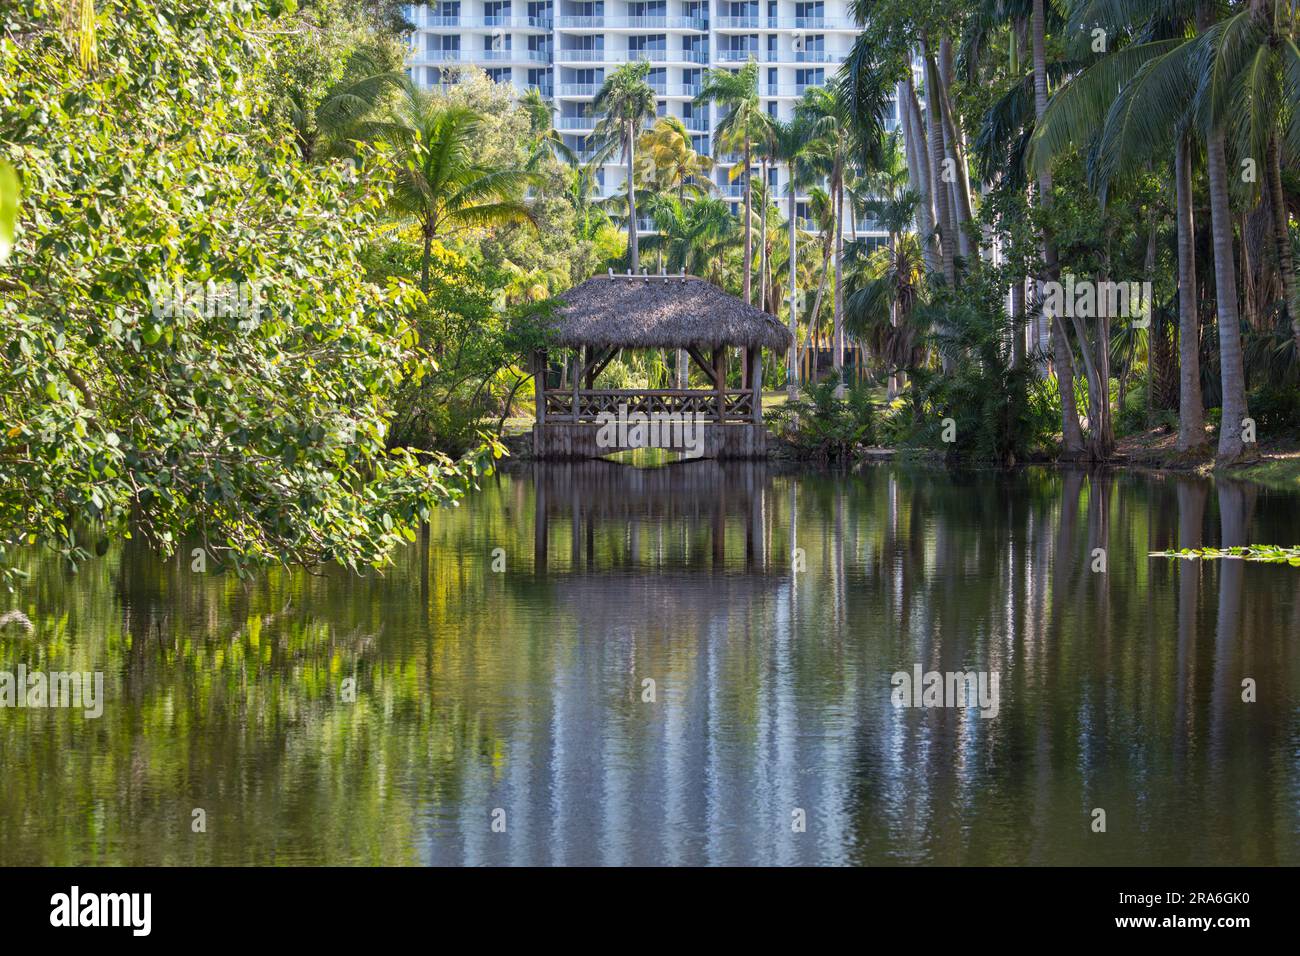 Fort Lauderdale, Floride, États-Unis. Vue sur Bonnet House Slough, un lac dans les jardins de l'historique Bonnet House, alias le domaine Bartlett. Banque D'Images